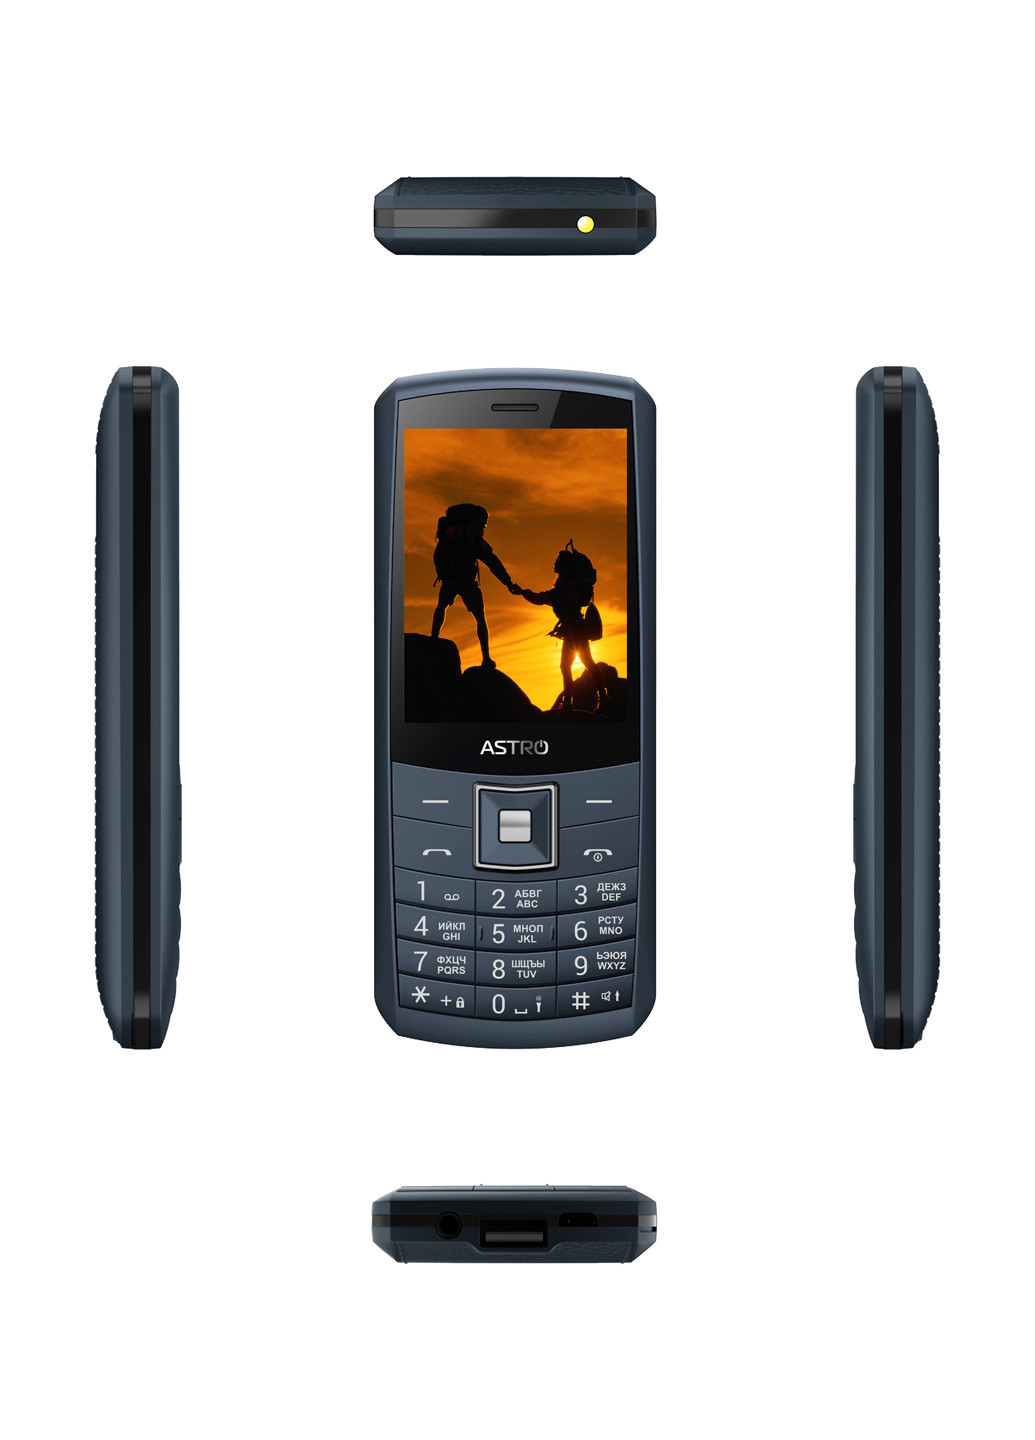 Мобильный телефон A184 Navy Astro astro a184 navy (131851164)